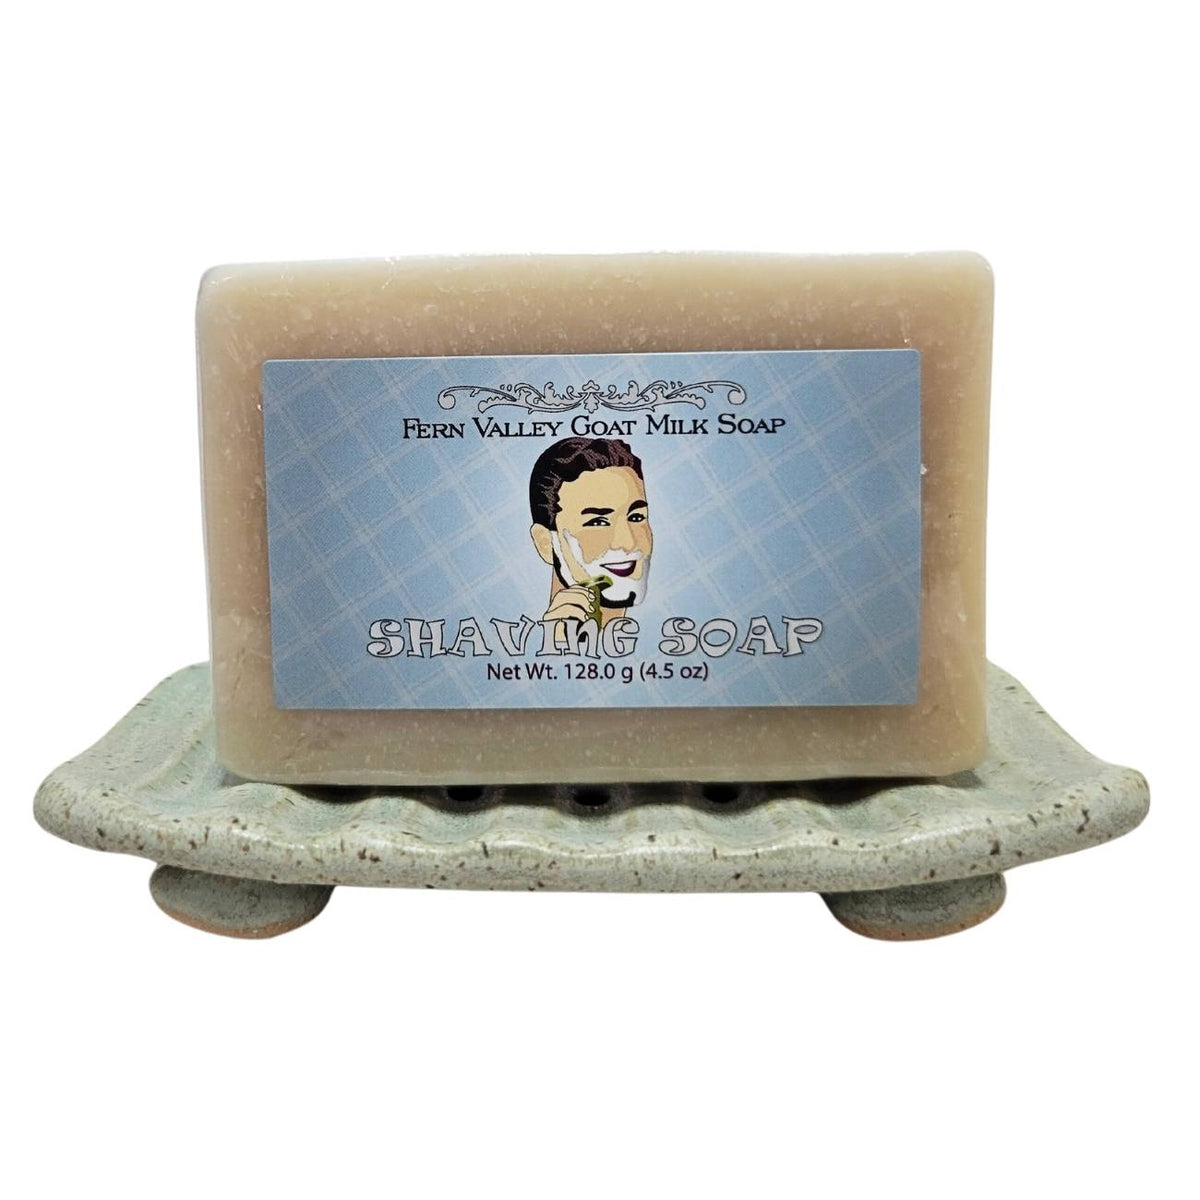 Handmade Goat Milk Soap | Shaving Soap for Men